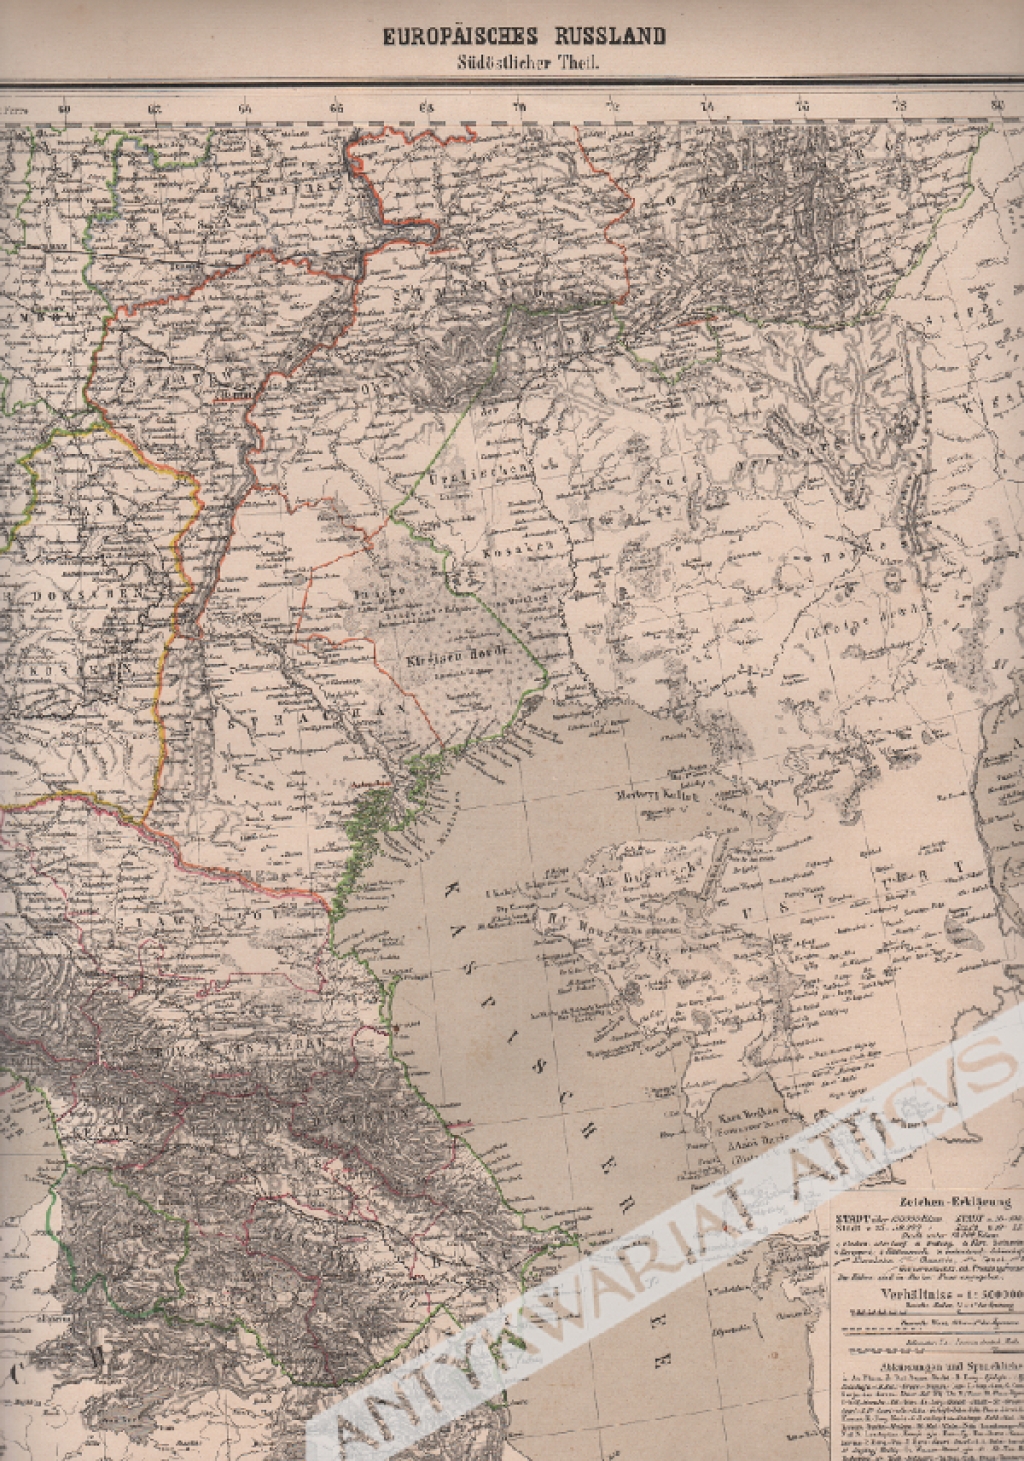 [mapa, 1879] Europaisches Russland Sudostlicher Theil [Rosja europejska, część południowo-wschodnia]